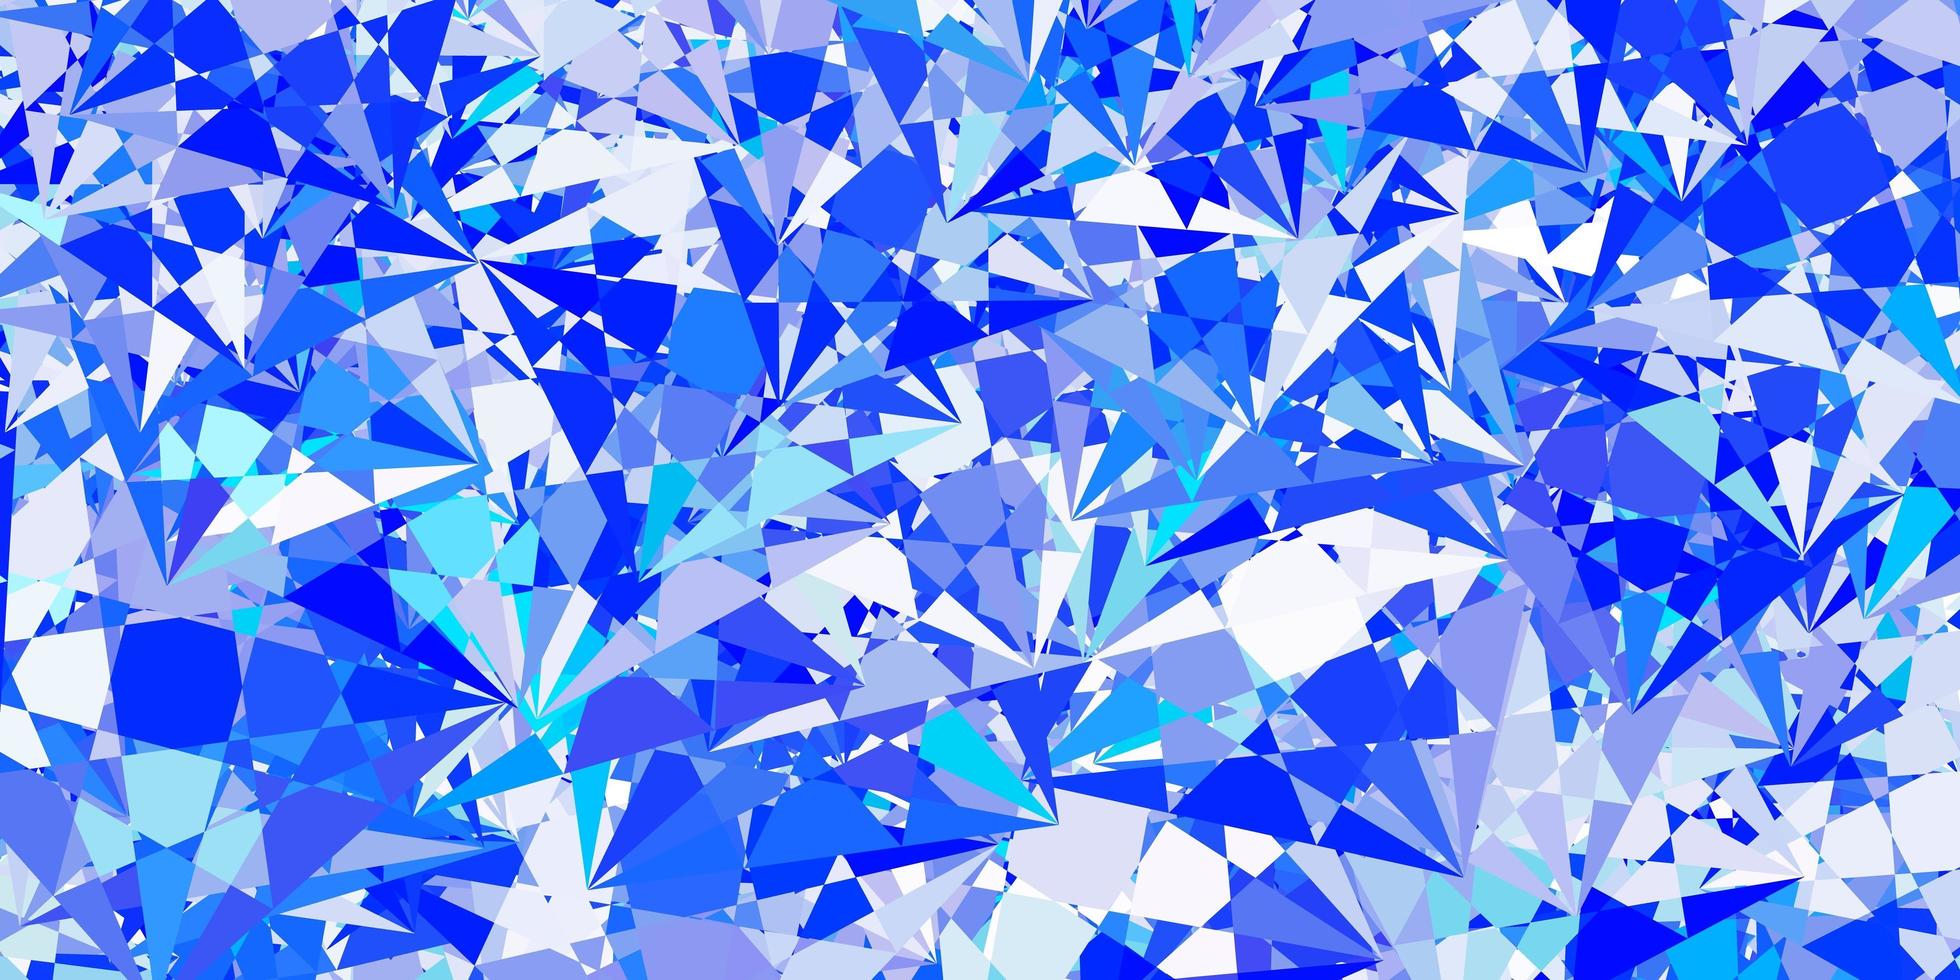 texture vettoriale blu chiaro con triangoli casuali